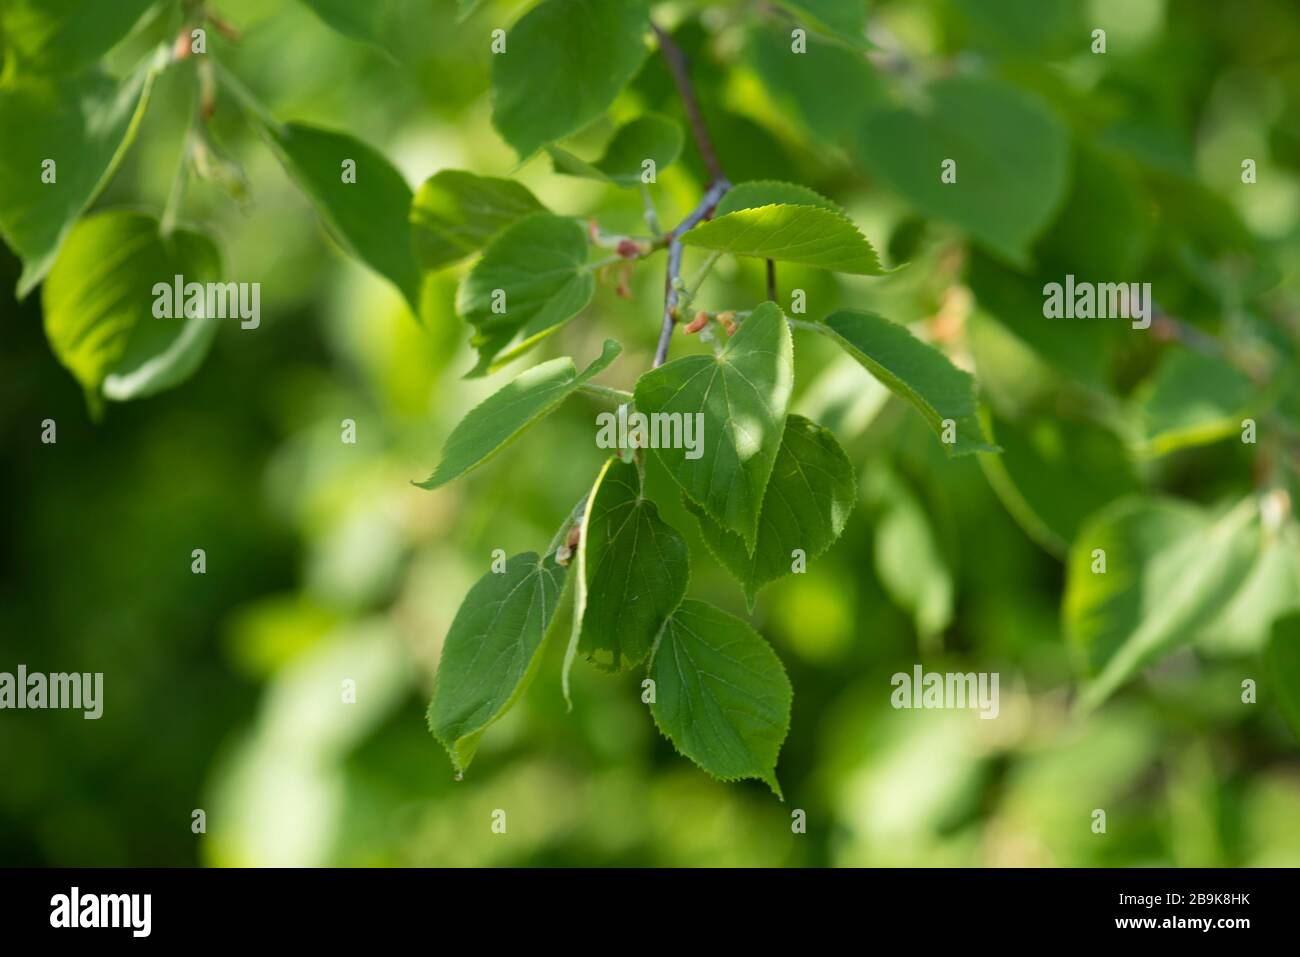 Hellgrün gesunde Pflanze. Planung des Gesundheitsschutzkonzepts. UN-Jahr für Pflanzengesundheit. Grüner natürlicher Hintergrund. Stockfoto